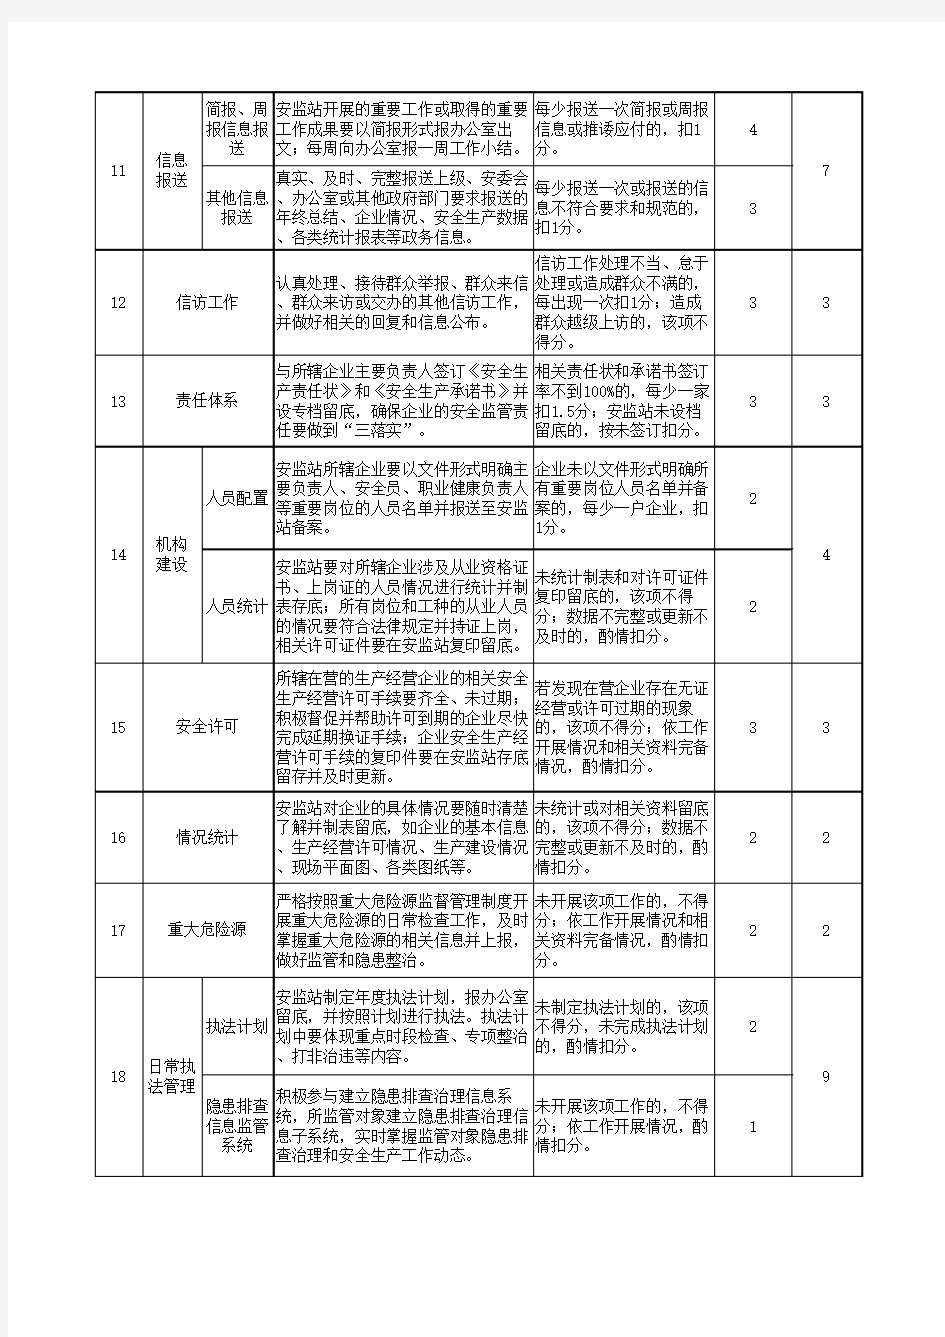 中阳县安监局乡镇安监站2016年责任制考核评分标准